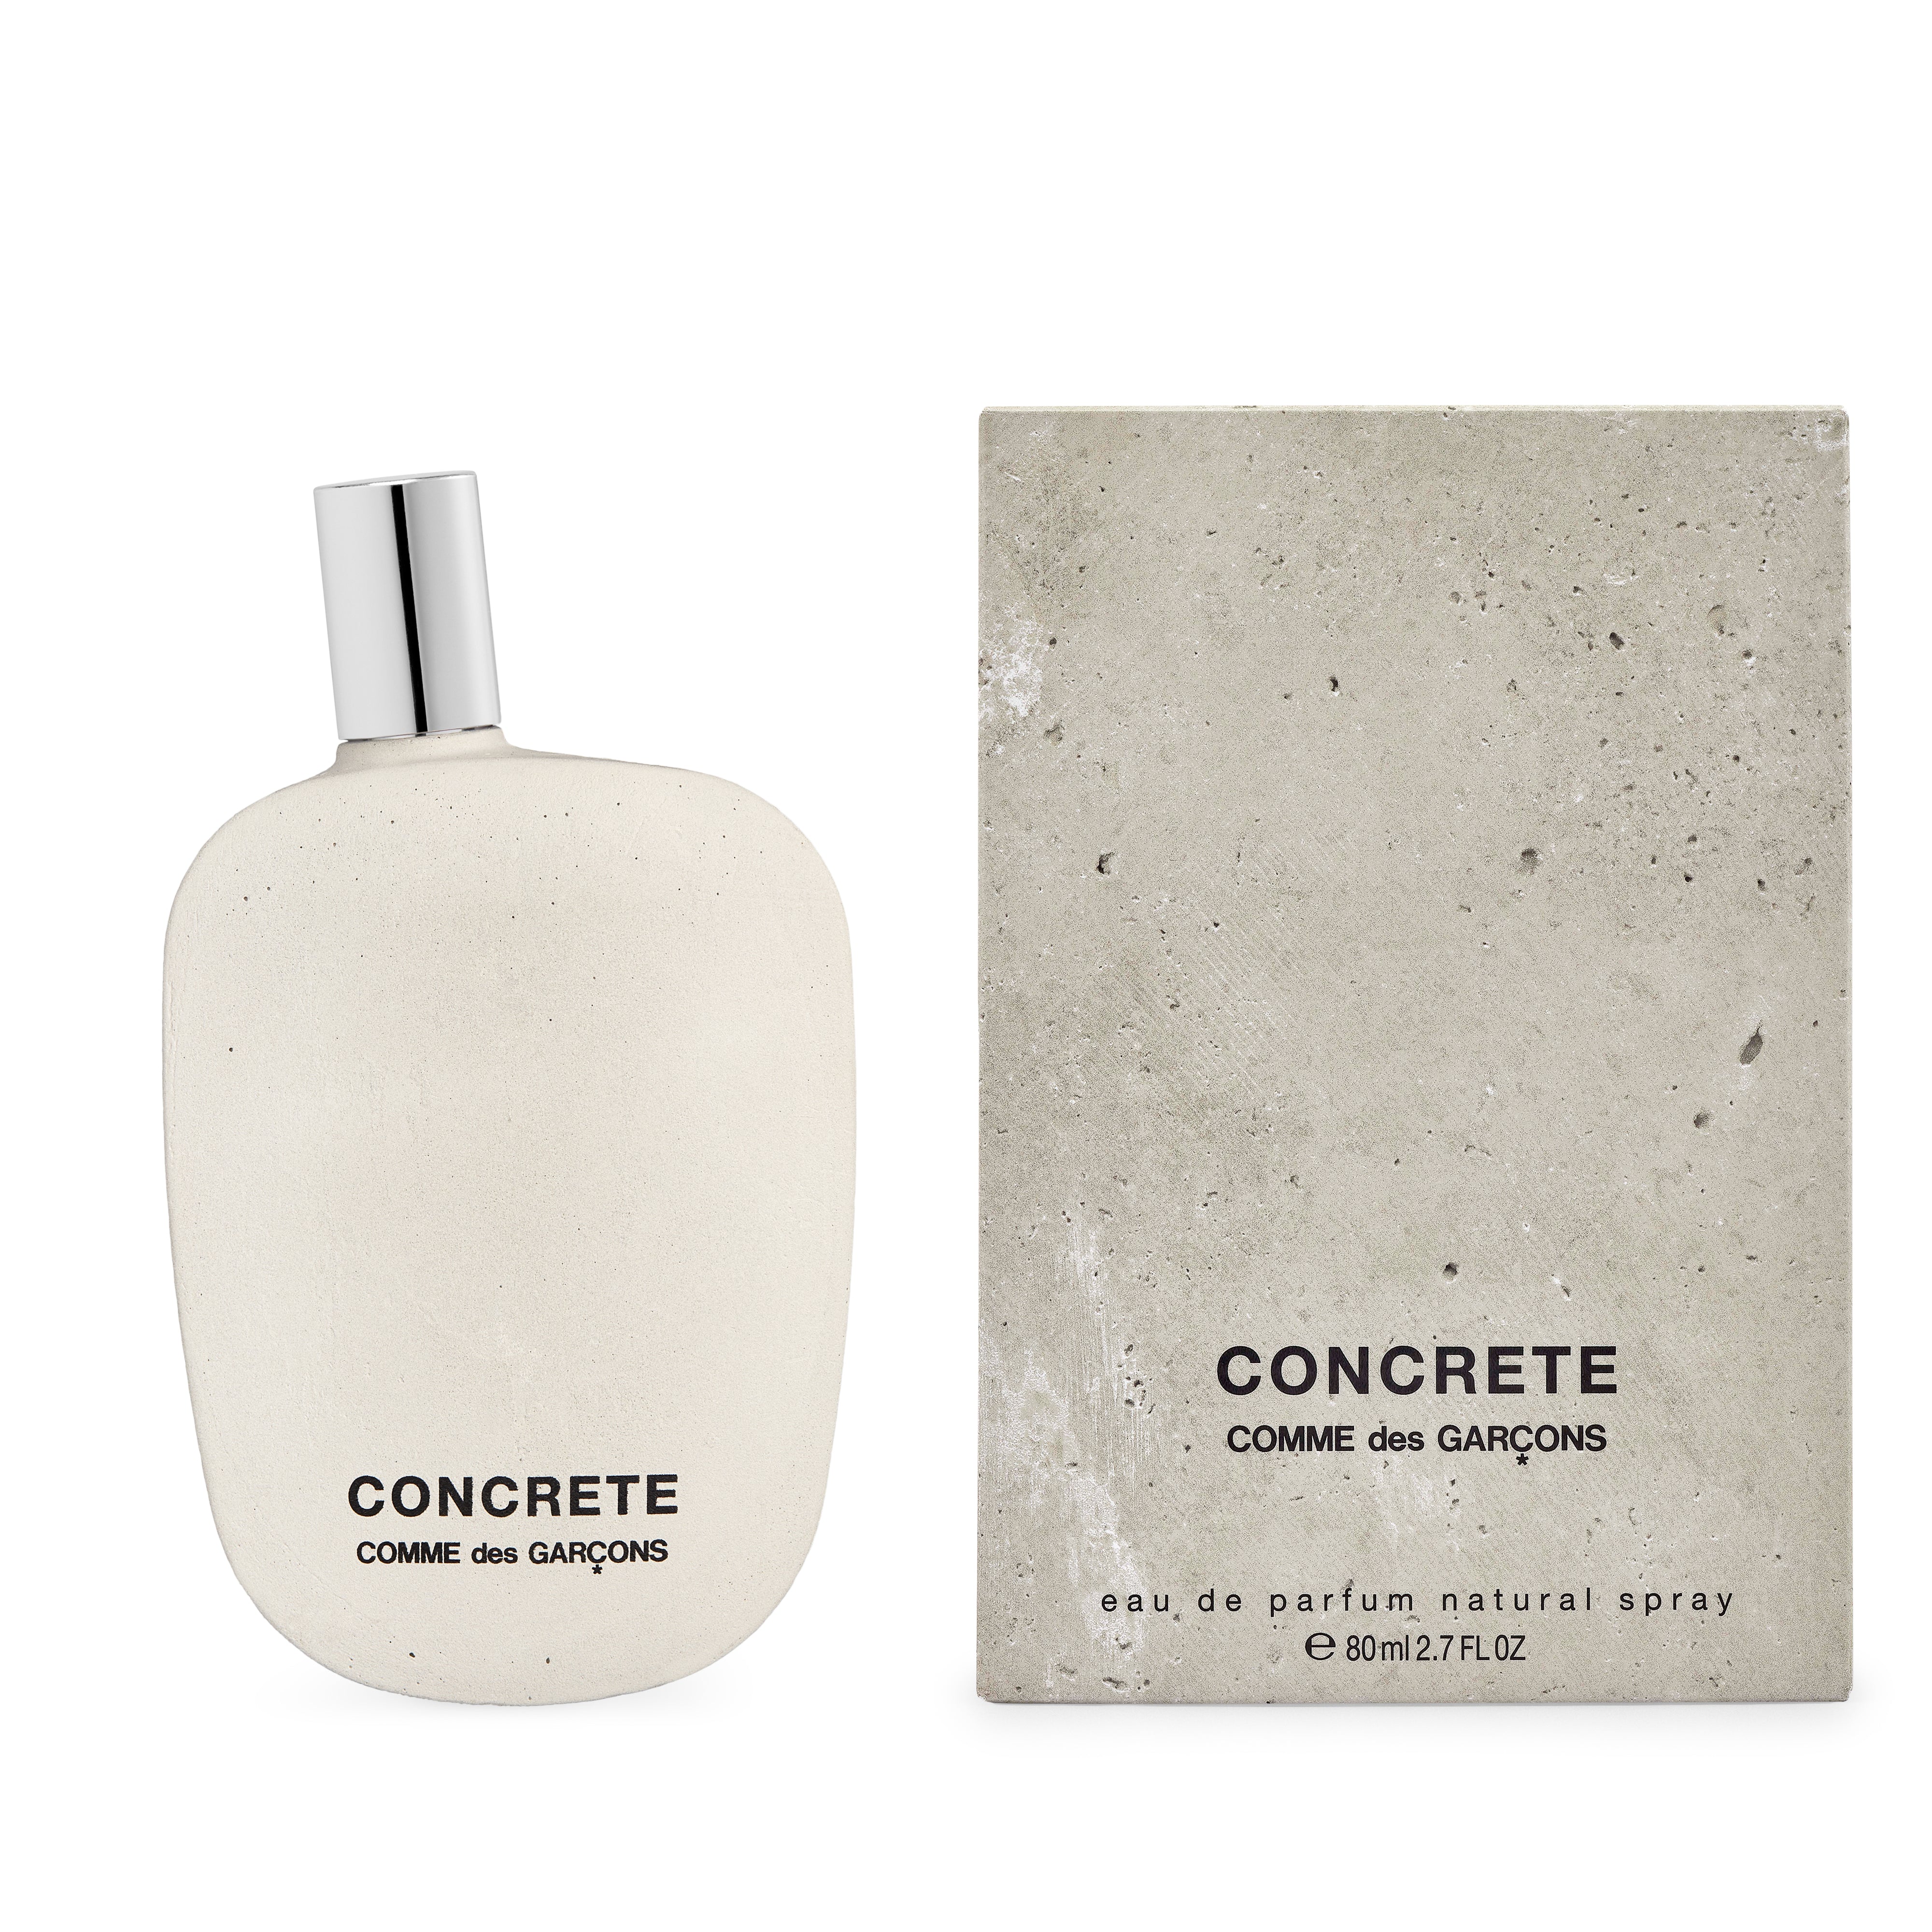 CDG Parfum - Concrete Eau de Parfum - (80ml natural spray)